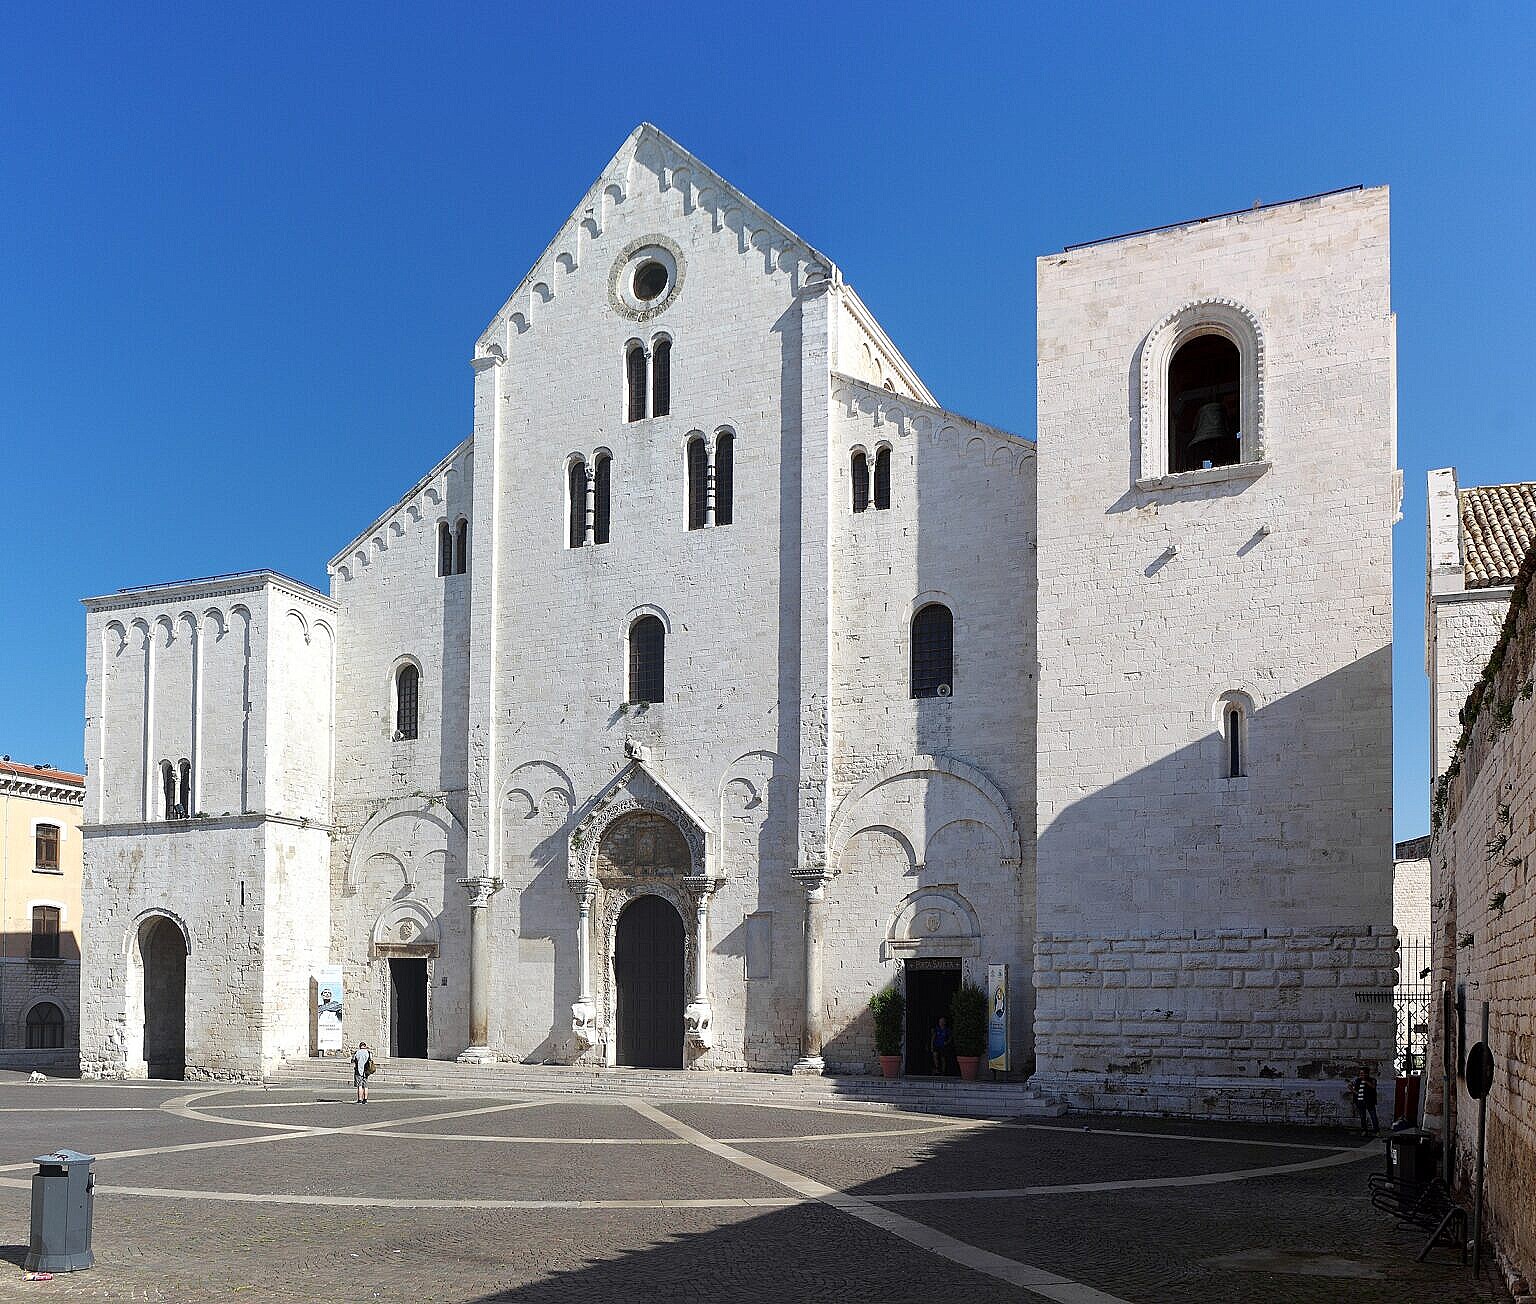 The Church of San Nicola in Bari, Italy.